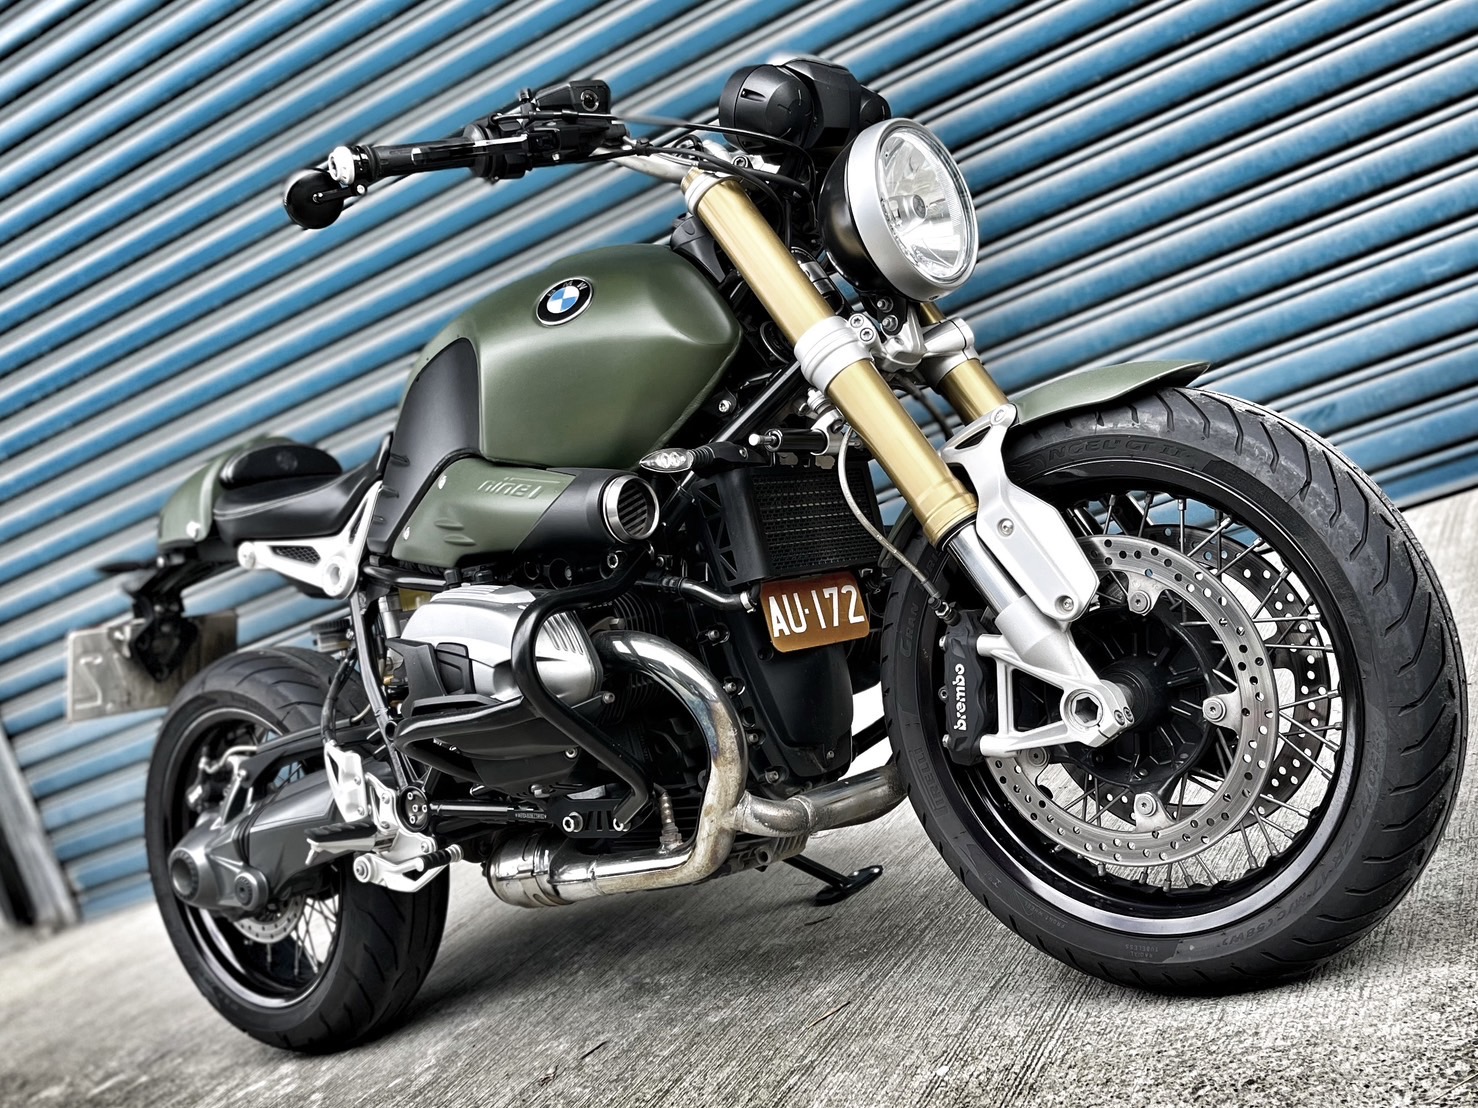 【小資族二手重機買賣】BMW R nineT - 「Webike-摩托車市」 視覺改裝 無摔無事故 里程保證 小資族二手重機買賣